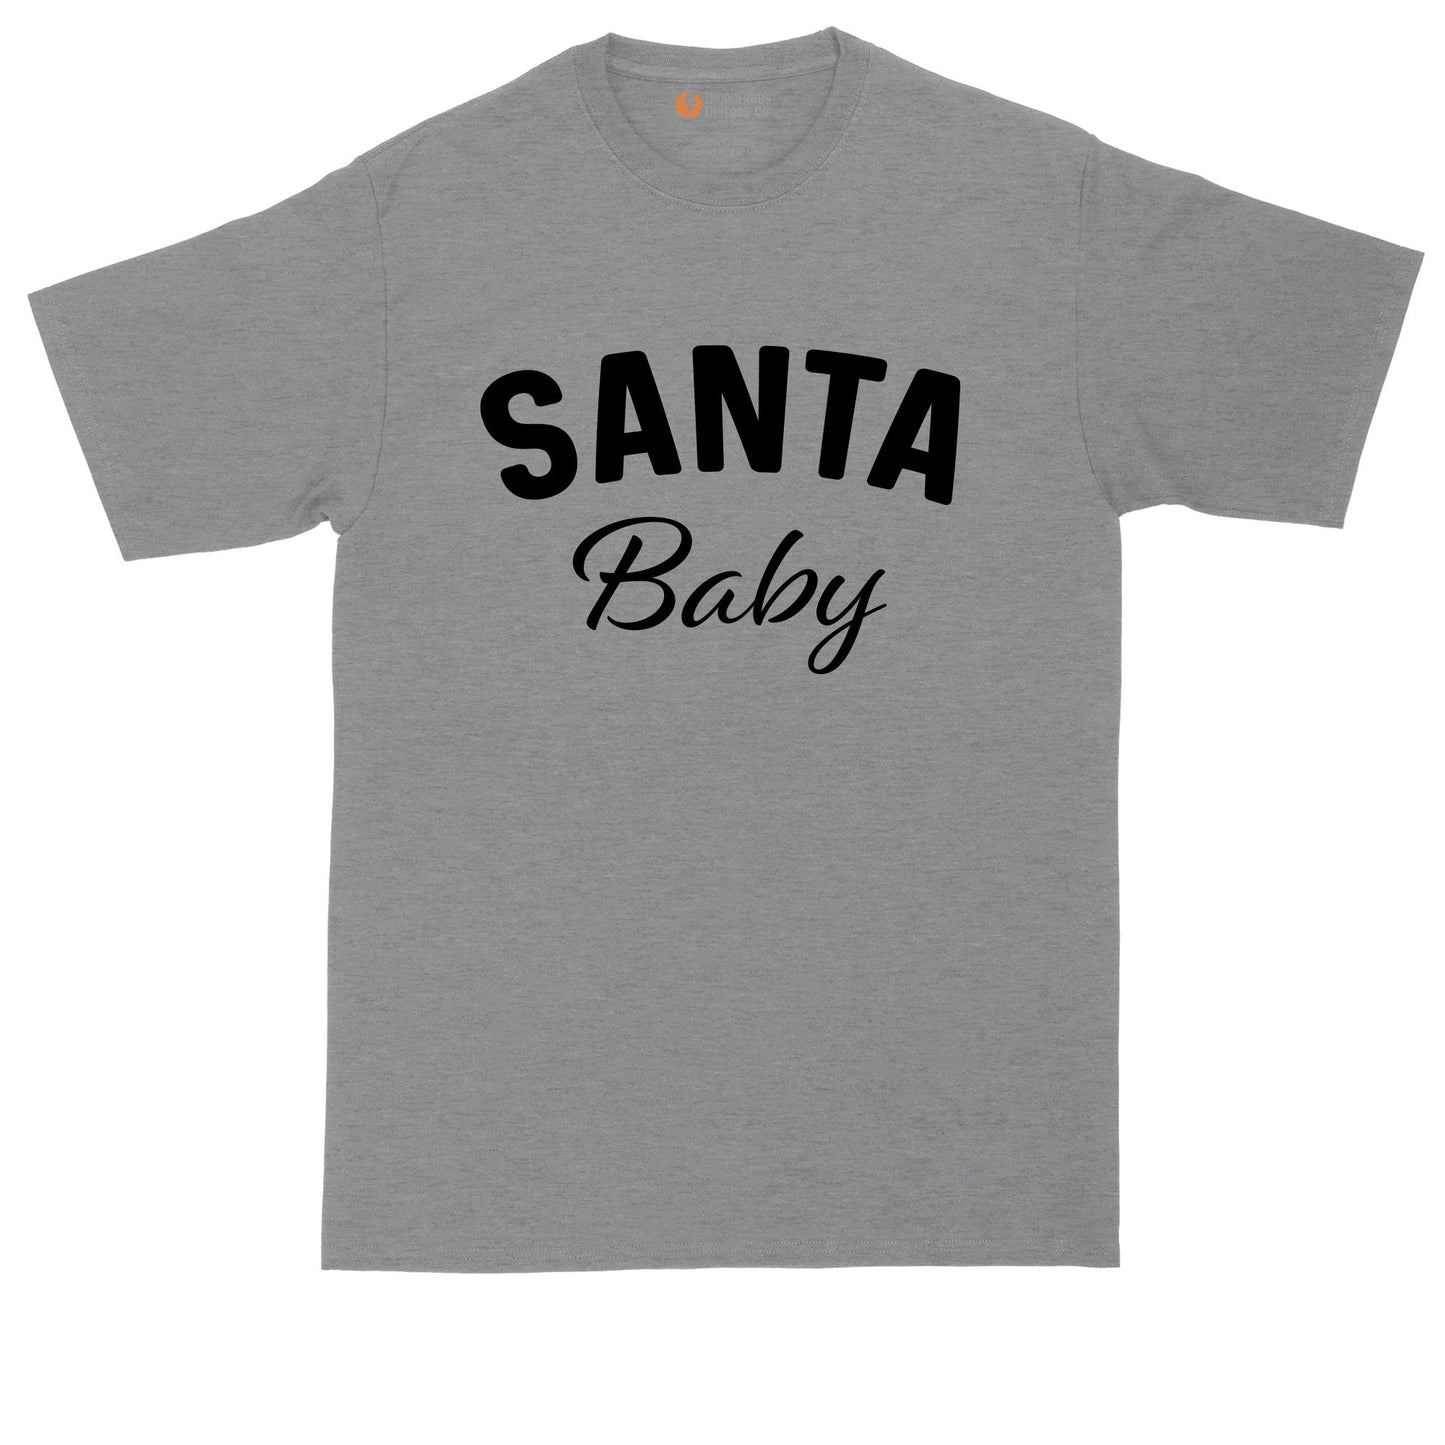 Santa Baby | Mens Big & Tall T-Shirt | Funny Christmas Shirt | Christmas Gift Shirt | Santa Claus Shirt